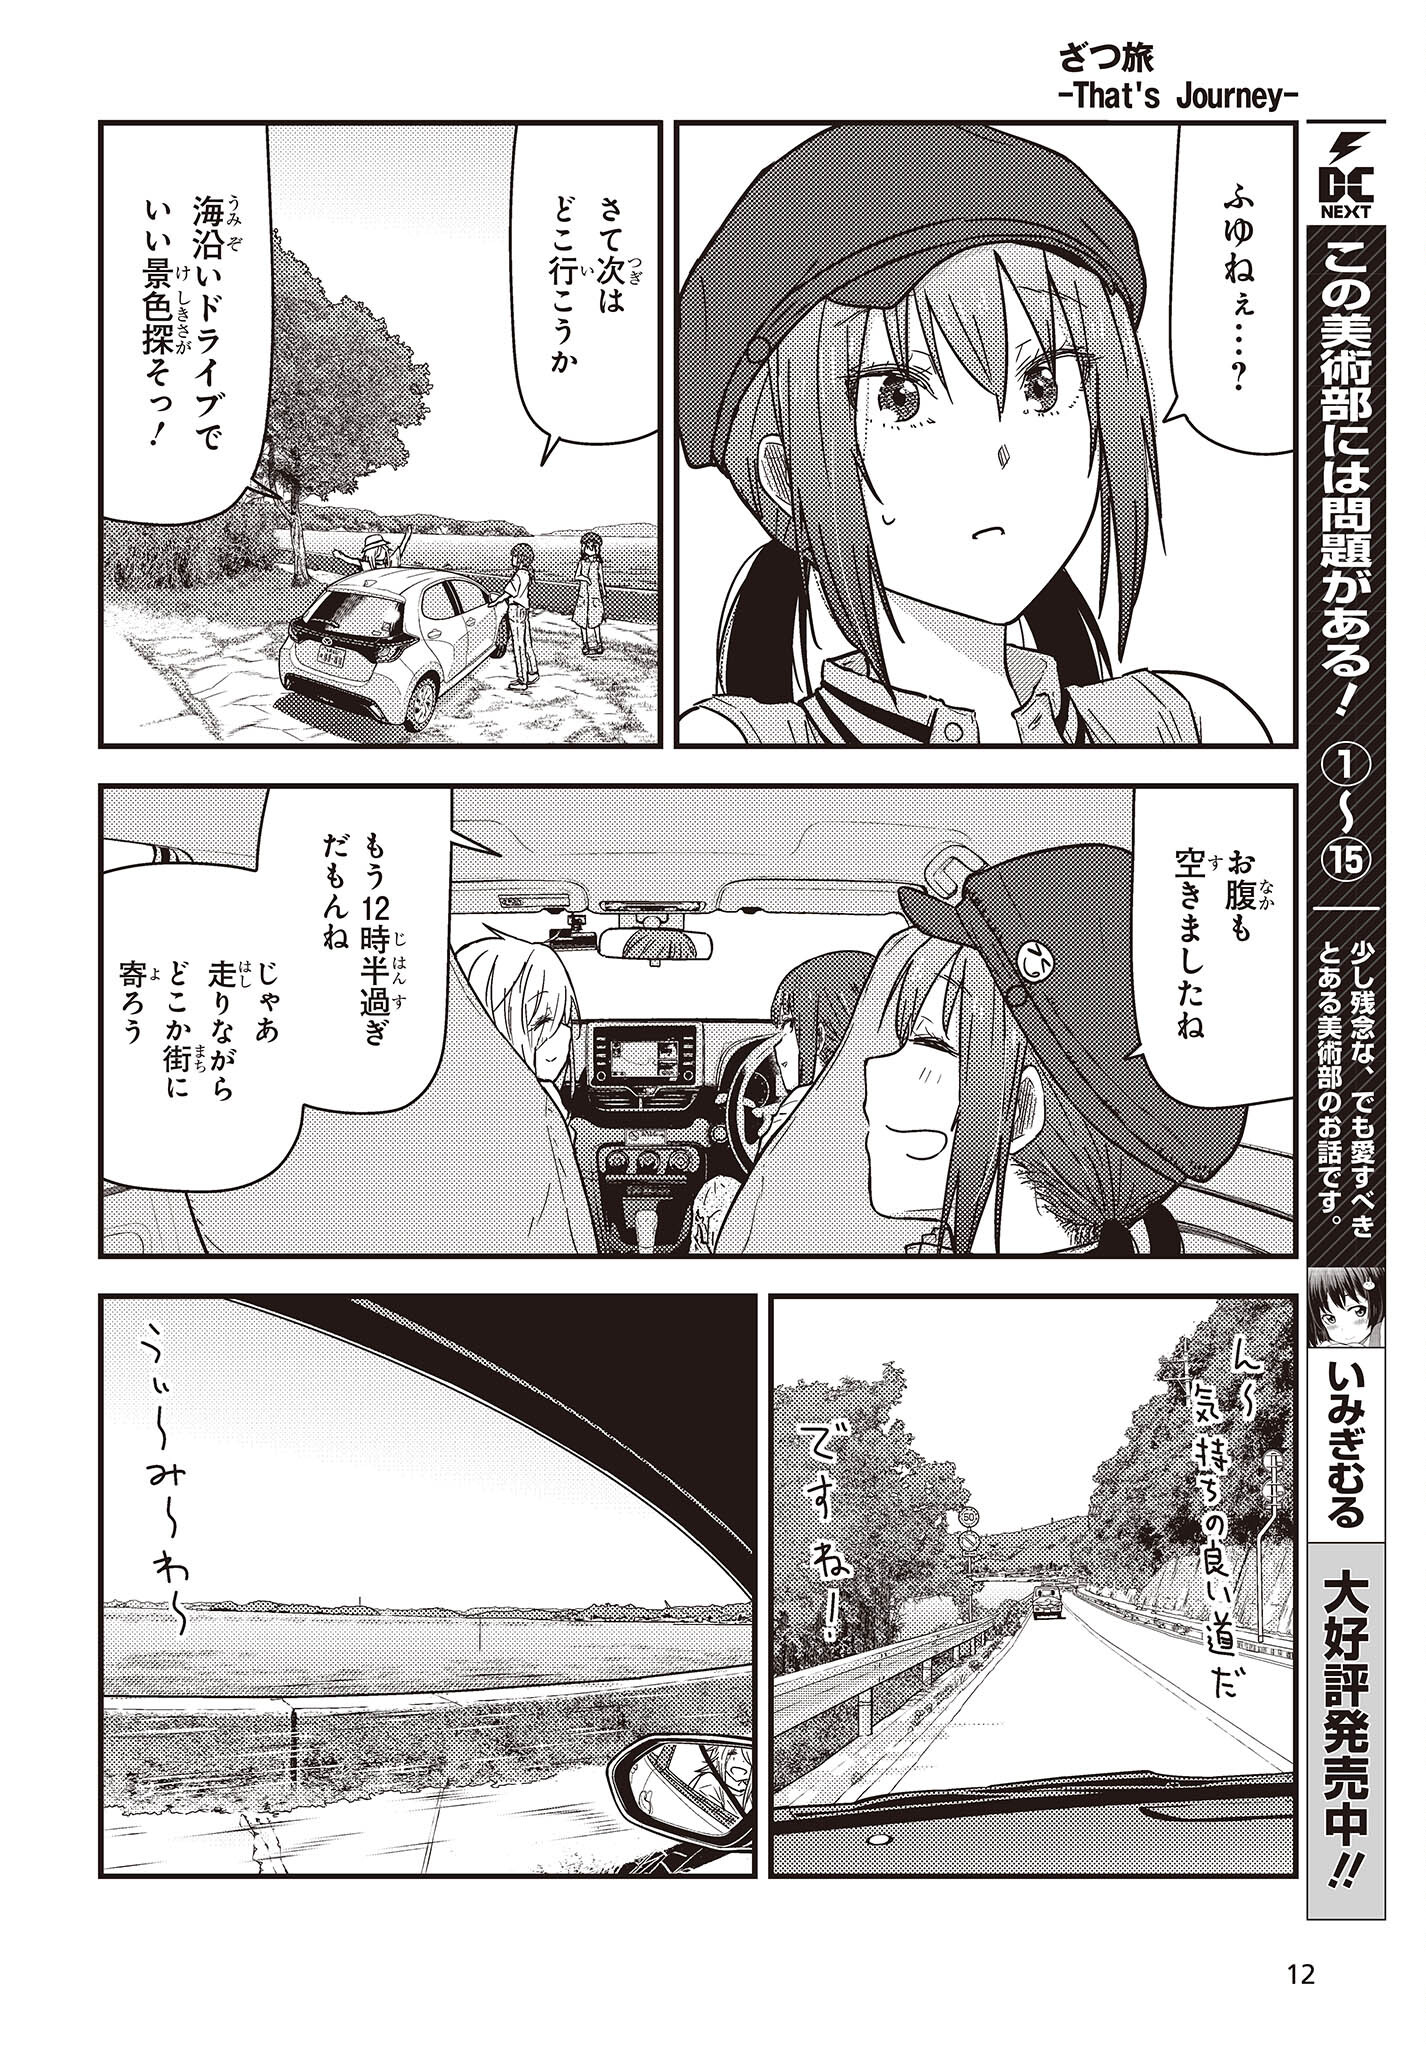 ざつ旅-That’s Journey- 第33話 - Page 6